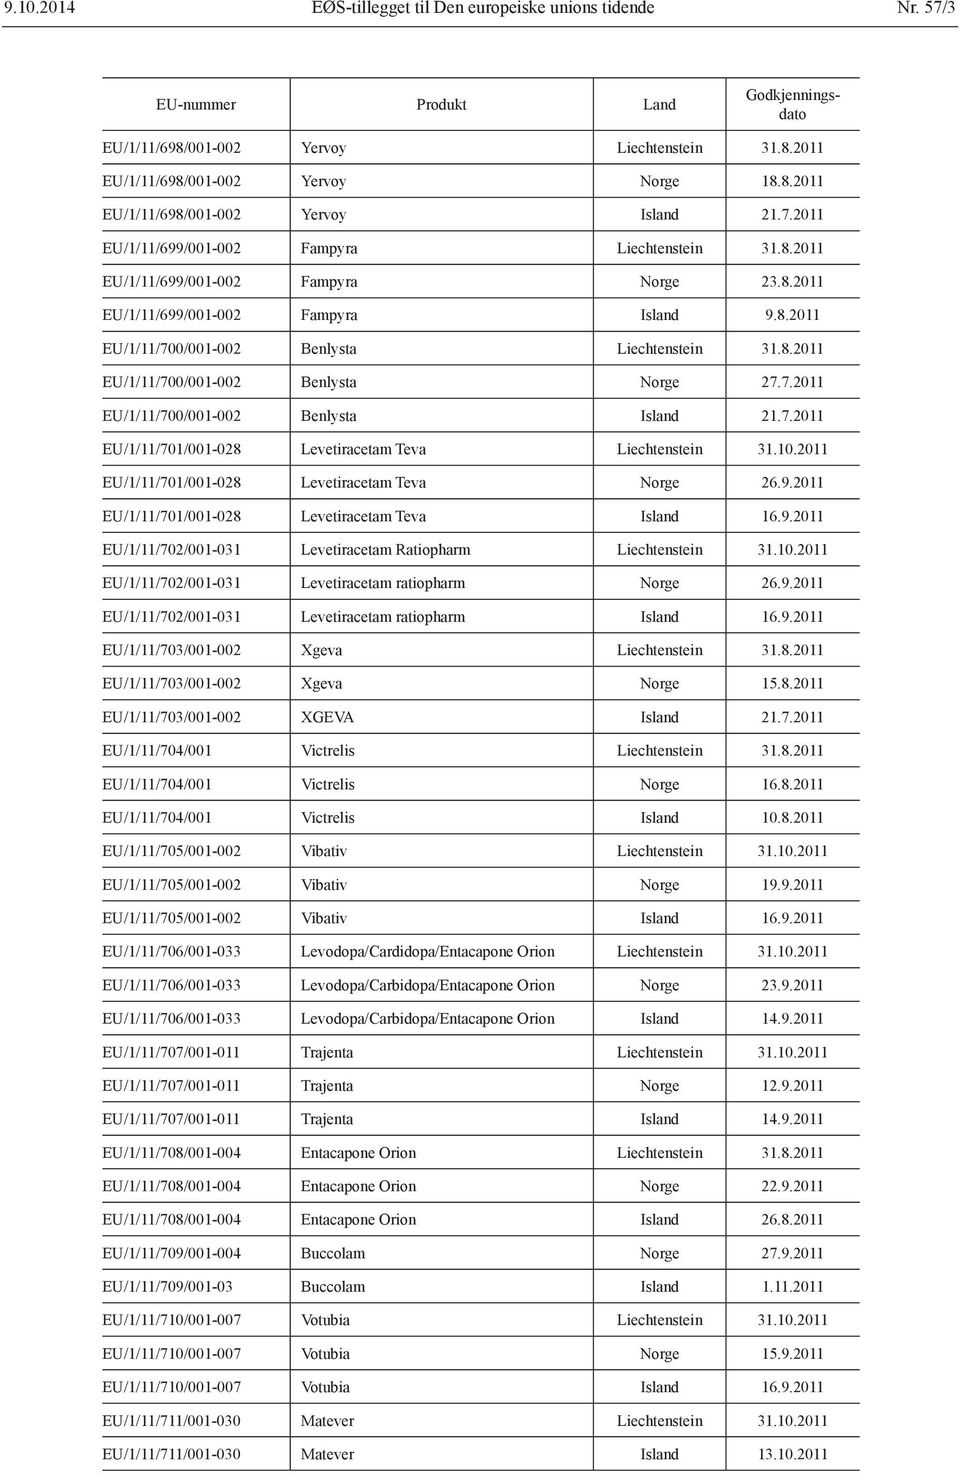 7.2011 EU/1/11/701/001-028 Levetiracetam Teva Liechtenstein 31.10.2011 EU/1/11/701/001-028 Levetiracetam Teva Norge 26.9.2011 EU/1/11/701/001-028 Levetiracetam Teva Island 16.9.2011 EU/1/11/702/001-031 Levetiracetam Ratiopharm Liechtenstein 31.